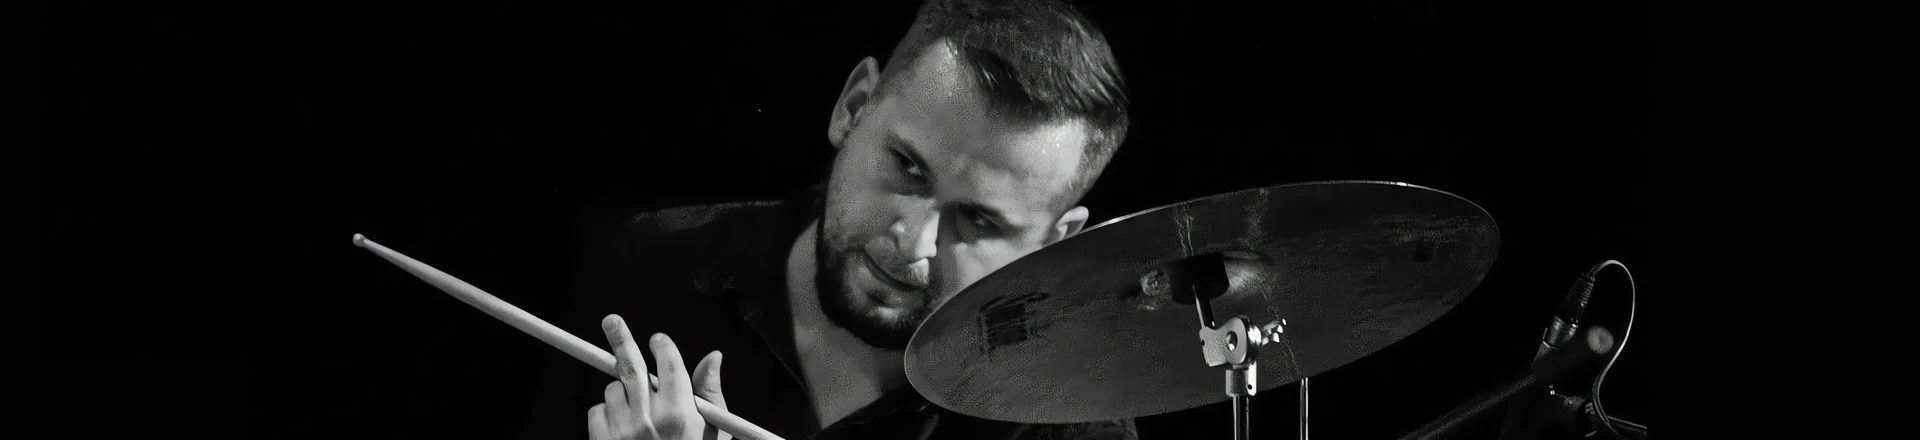 Warsztat perkusyjny z Łukaszem Sobolakiem (Mikromusic) już 4 grudnia w Drum Roomie